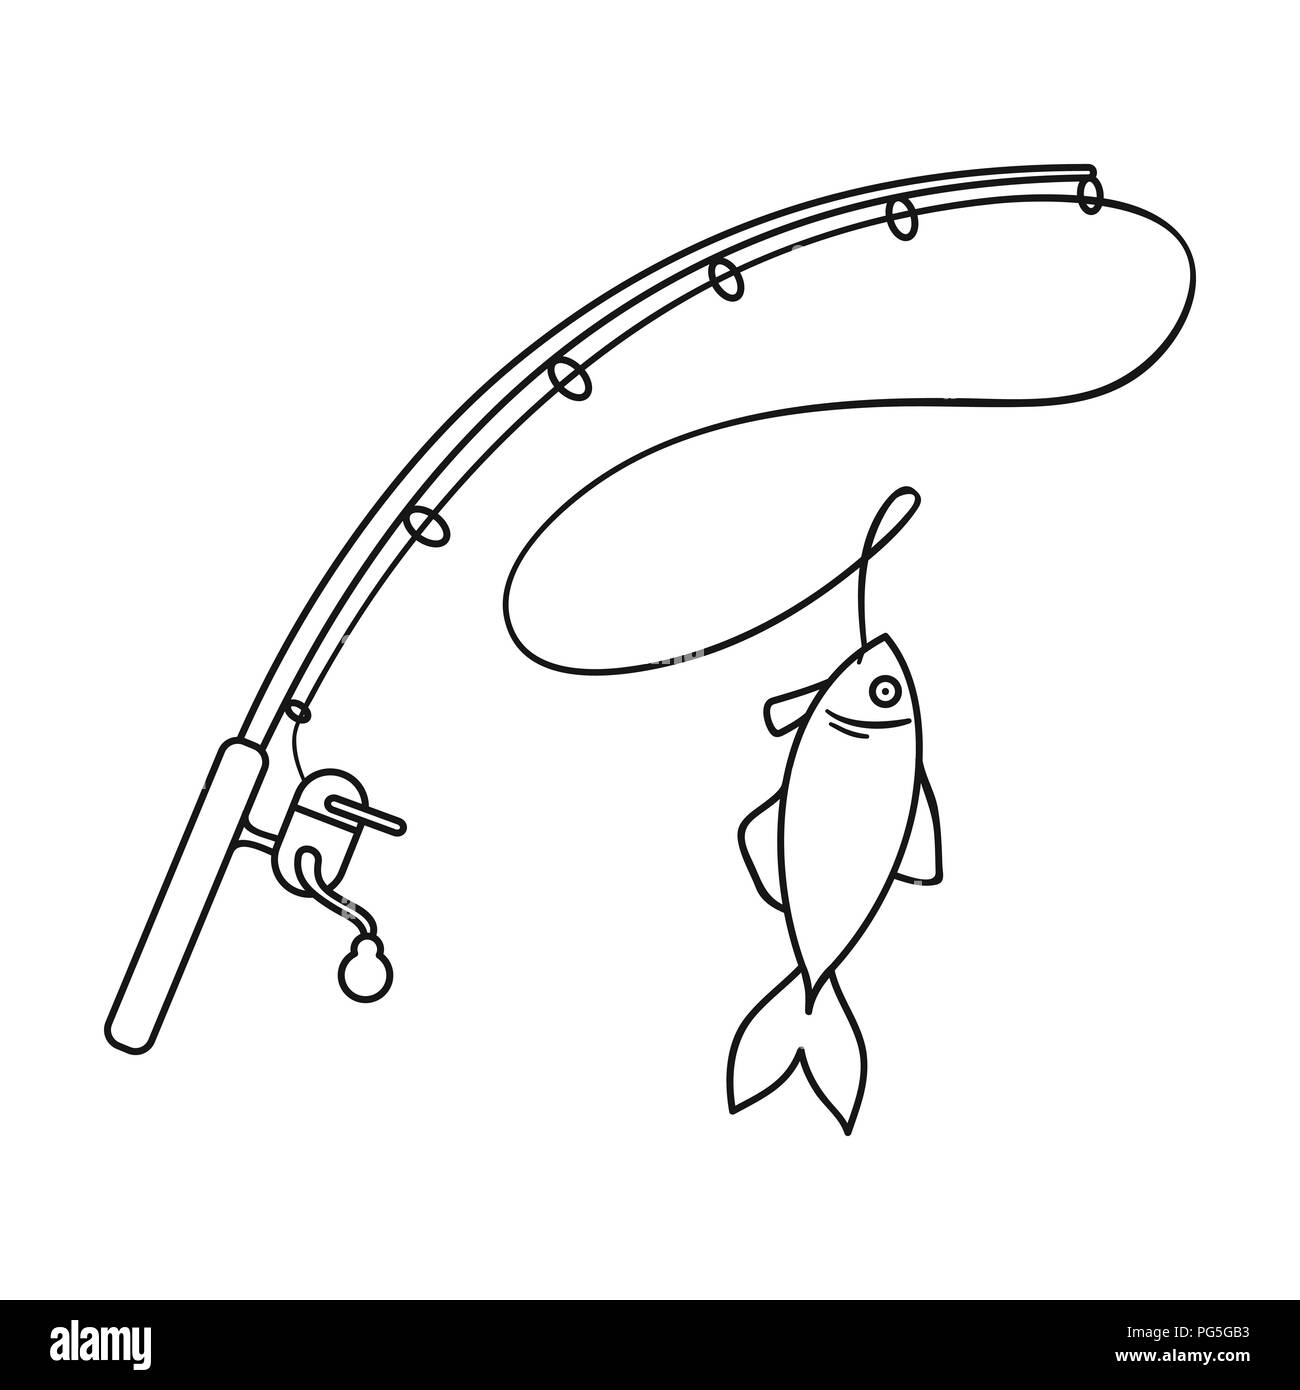 Canne à pêche et poissons icône dans avant-projet isolé sur fond blanc.  Symbole d'illustration vectorielle stock de pêche Image Vectorielle Stock -  Alamy